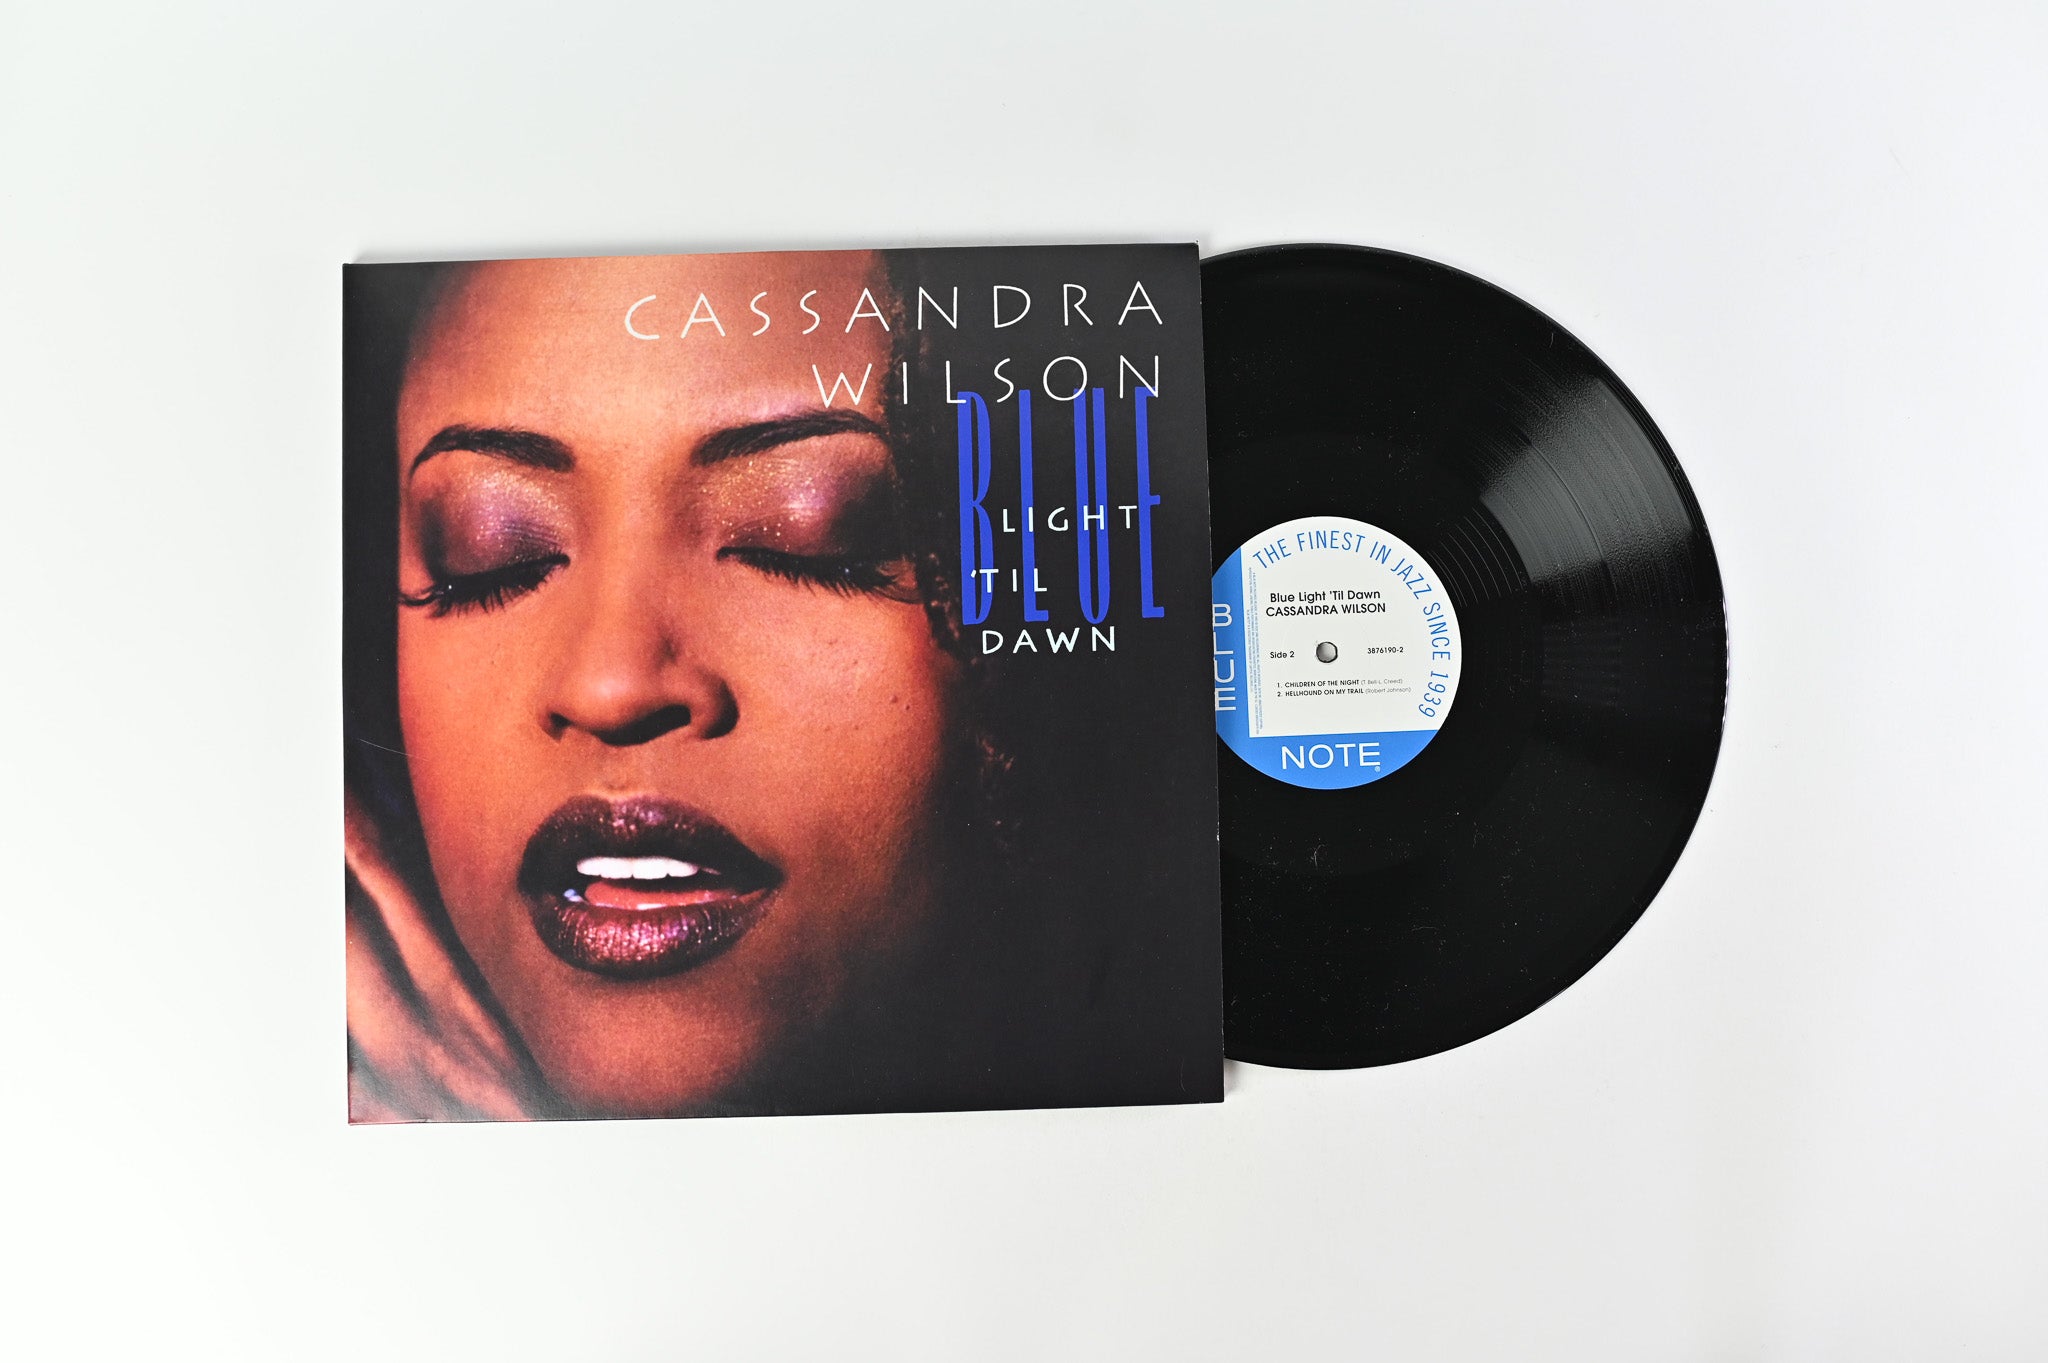 Cassandra Wilson - Blue Light 'Til Dawn Reissue on Blue Note